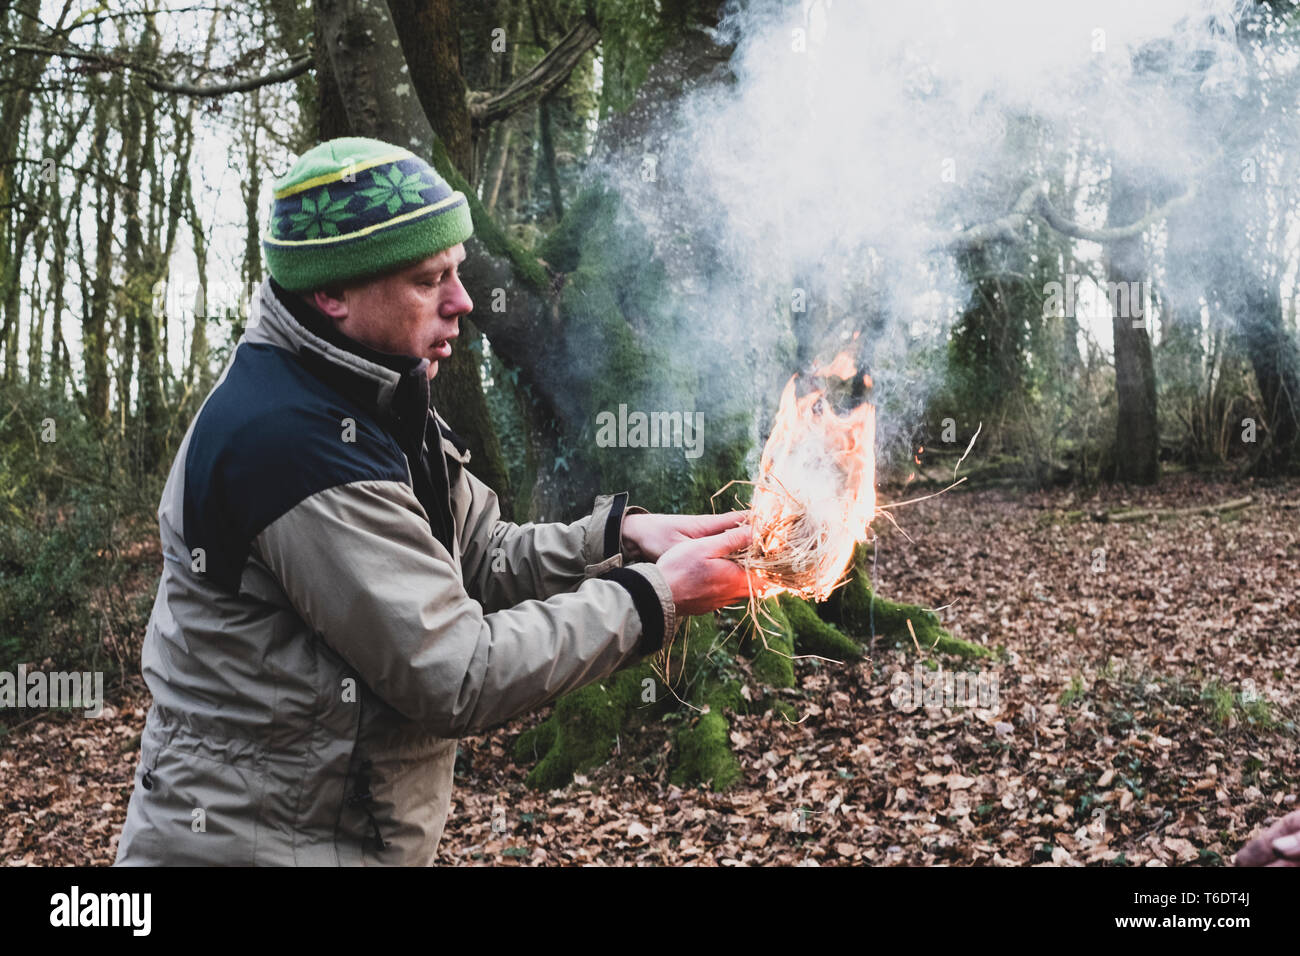 Mann in einem Wald, beleuchtet Holding - Bündeln von Stroh, zünden Feuer. Stockfoto